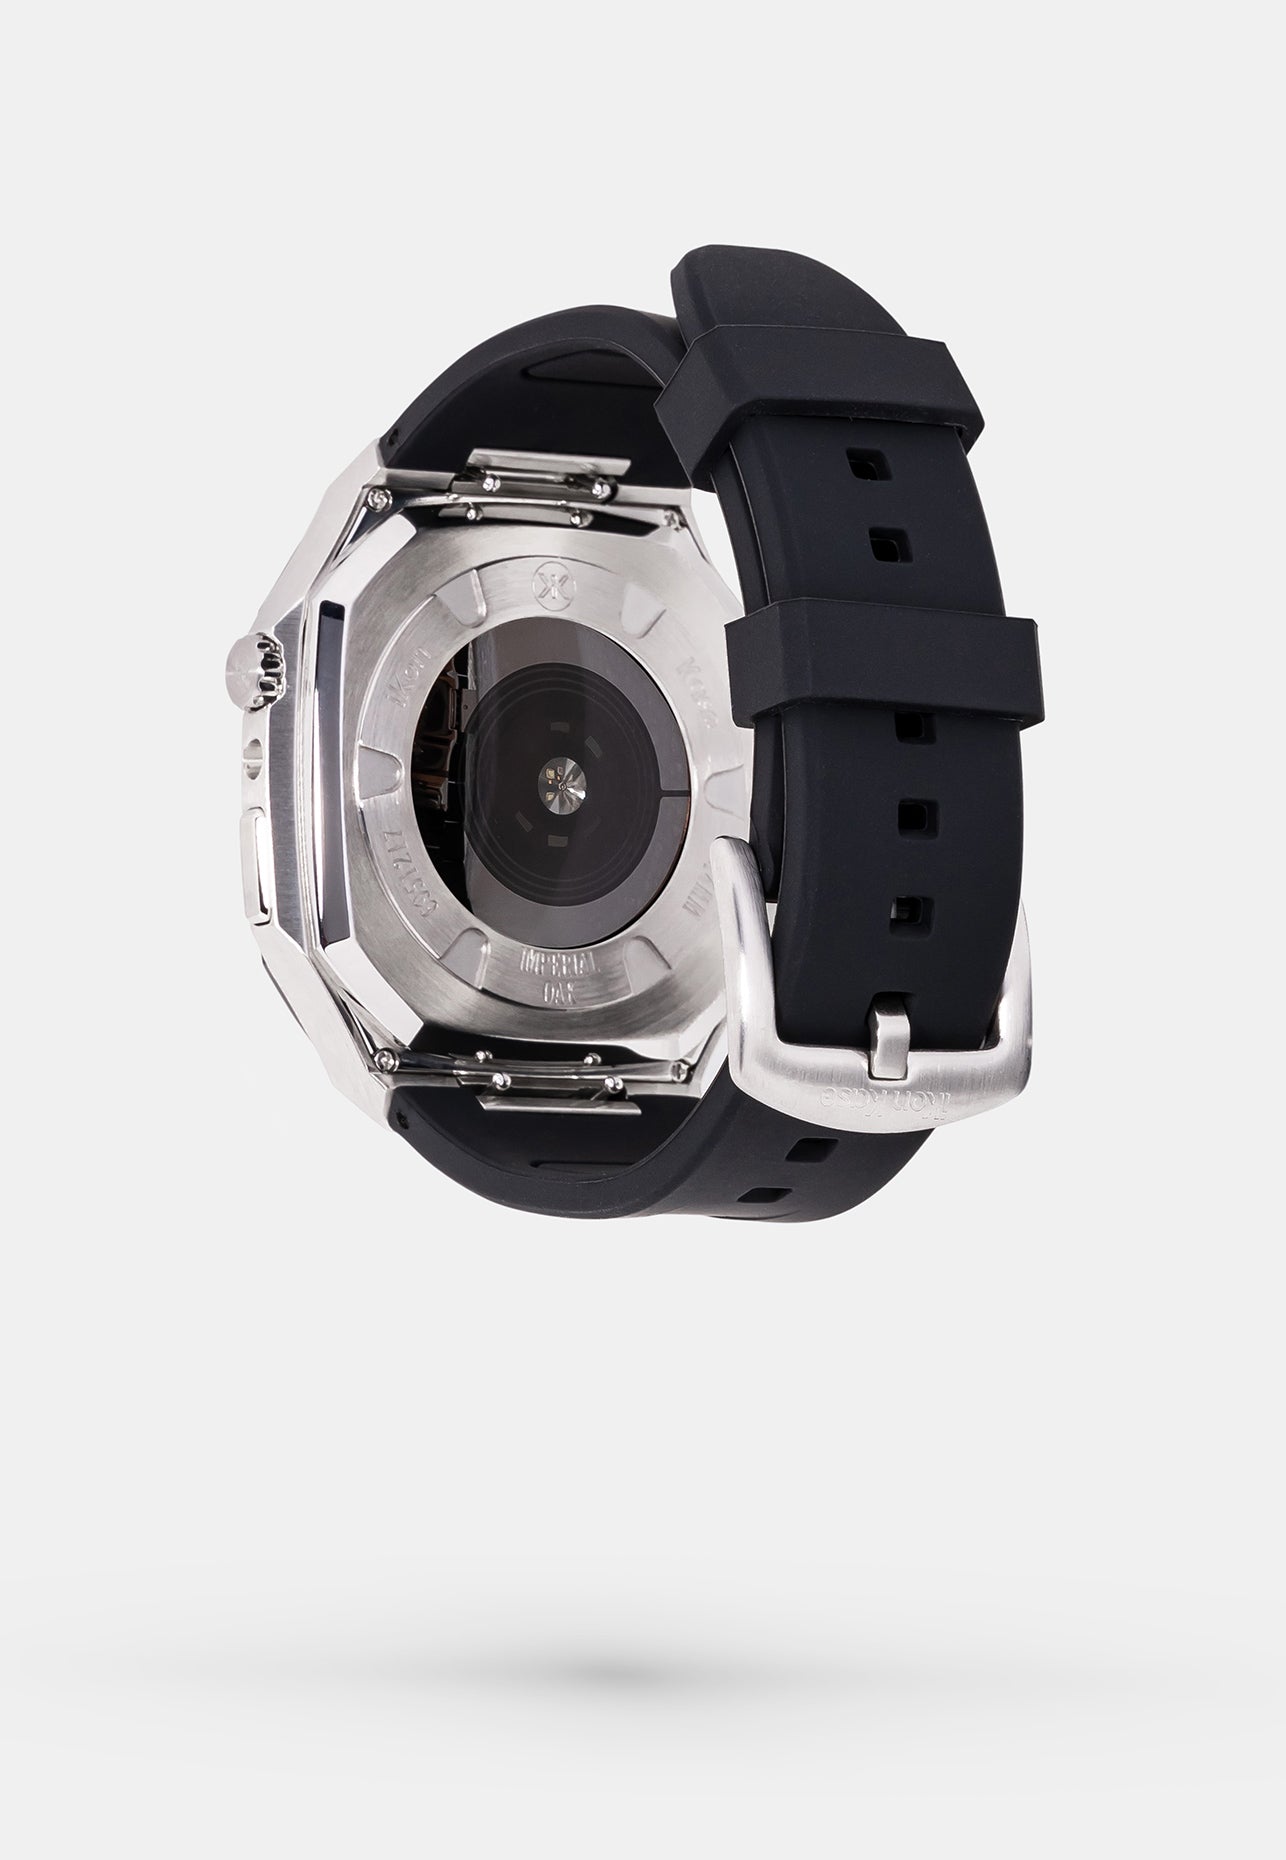 Offshore Black - Accessoire Apple Watch - Coque Etui Noir avec lunette de la Montre en Argent Bracelet Noir Appel Watch 4, 5, 6 et SE - arriere